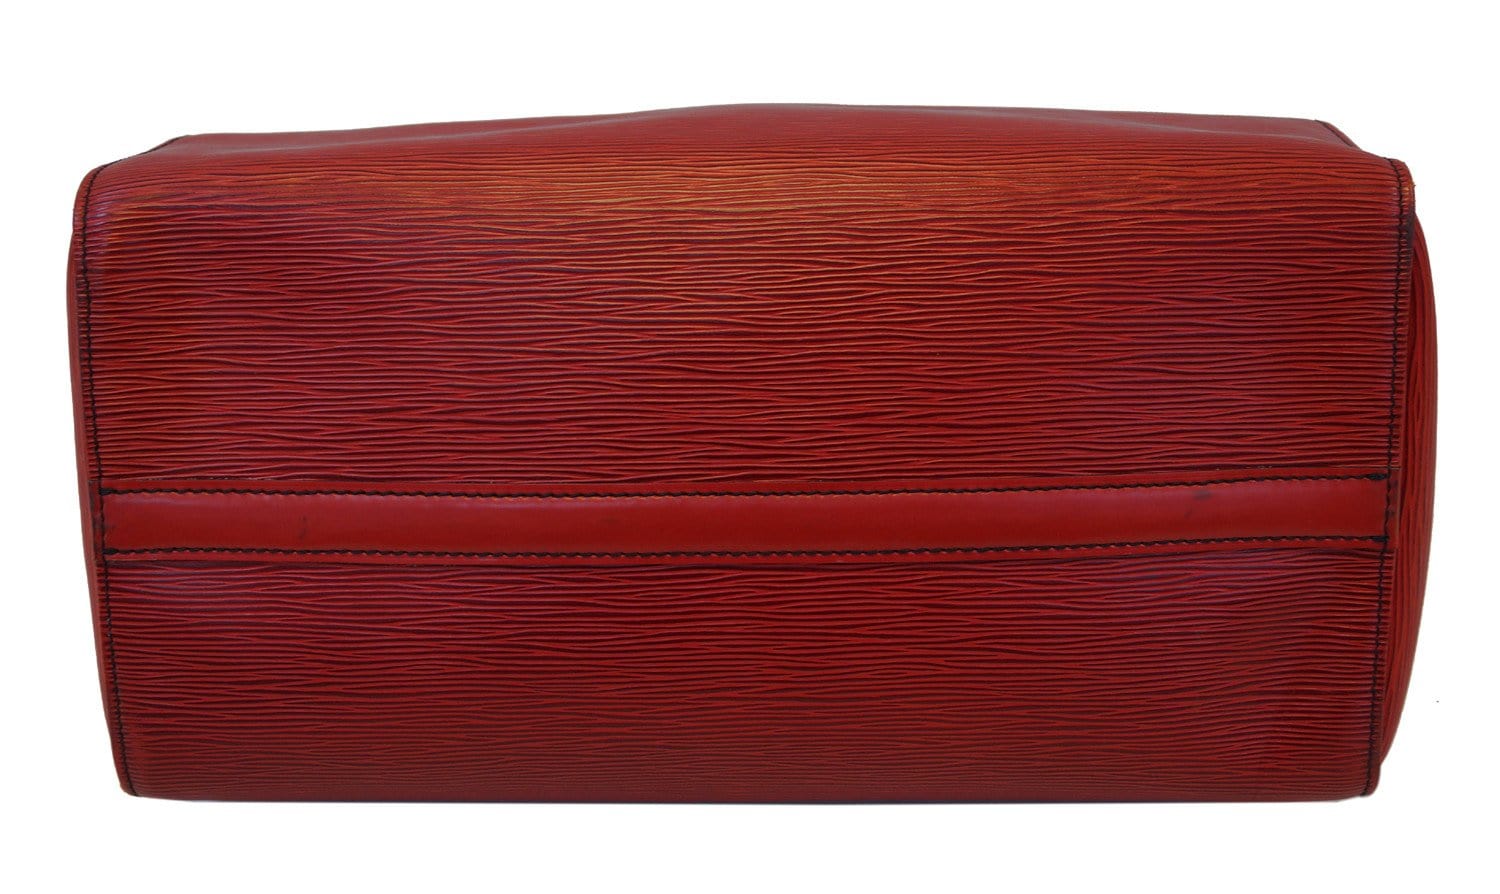 Louis Vuitton  Speedy 35 Castilian red Epi – Canada Luxury